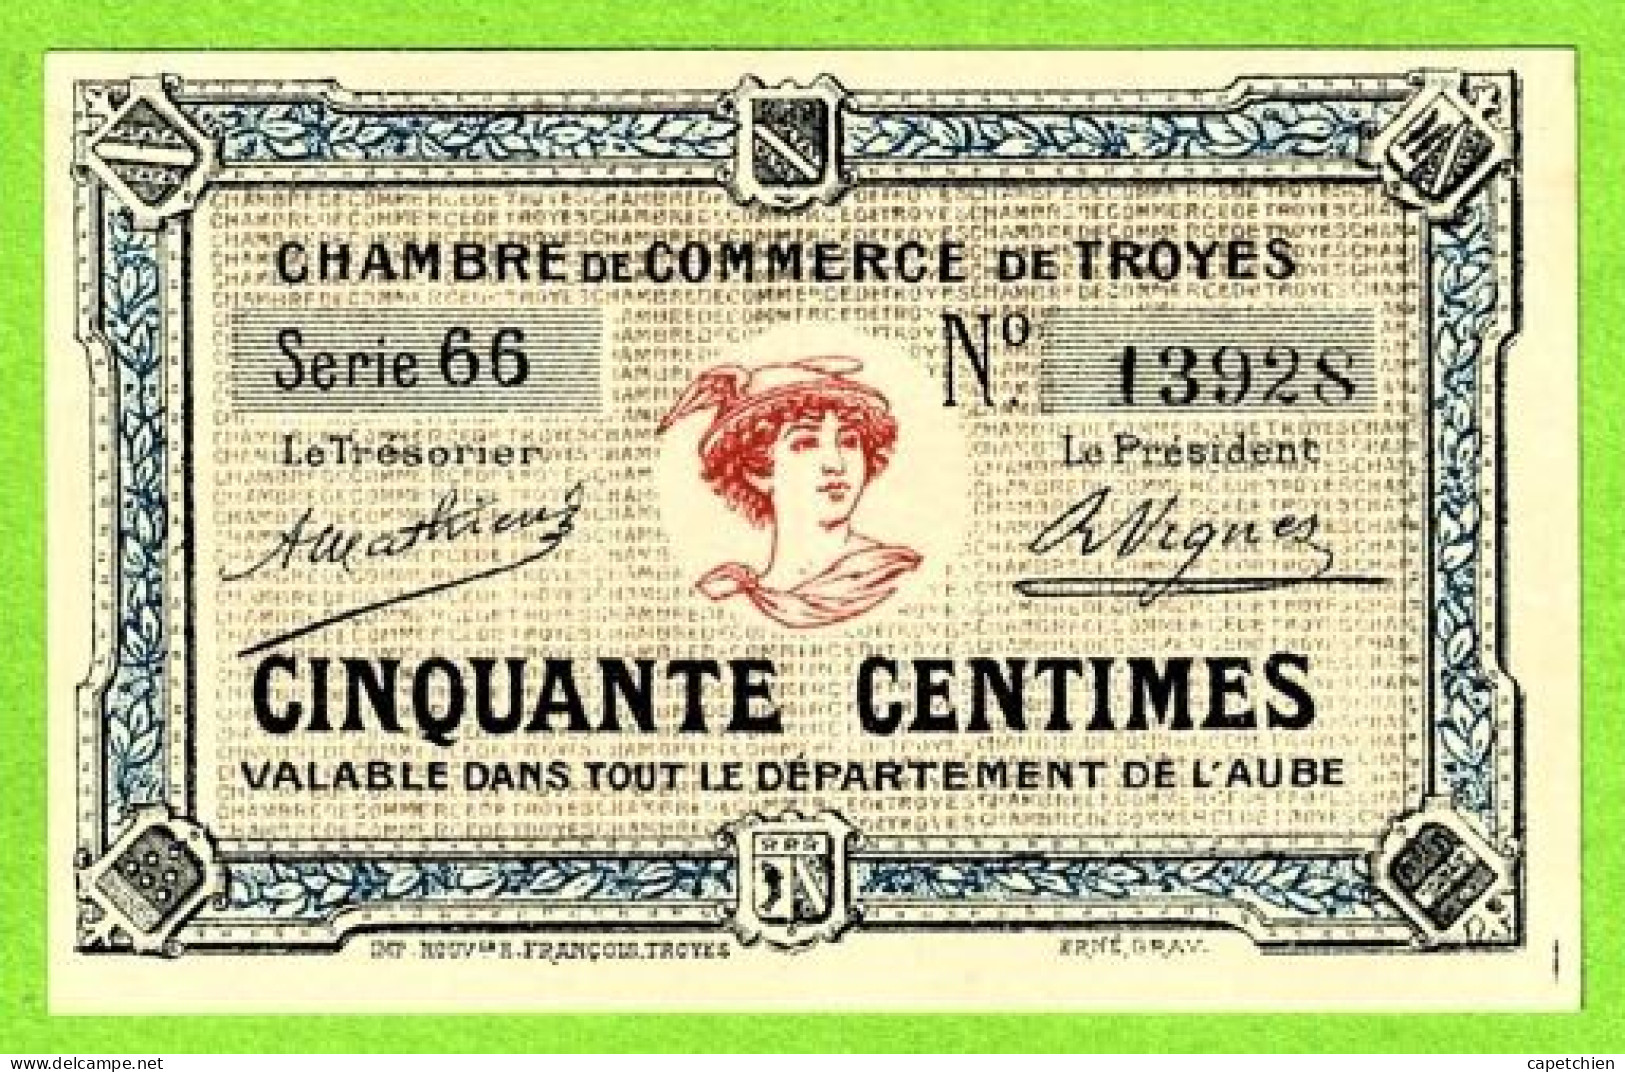 FRANCE / CHAMBRE De COMMERCE De TROYES/ 50 CENTIMES / 13928 /  SERIE 66 - Cámara De Comercio